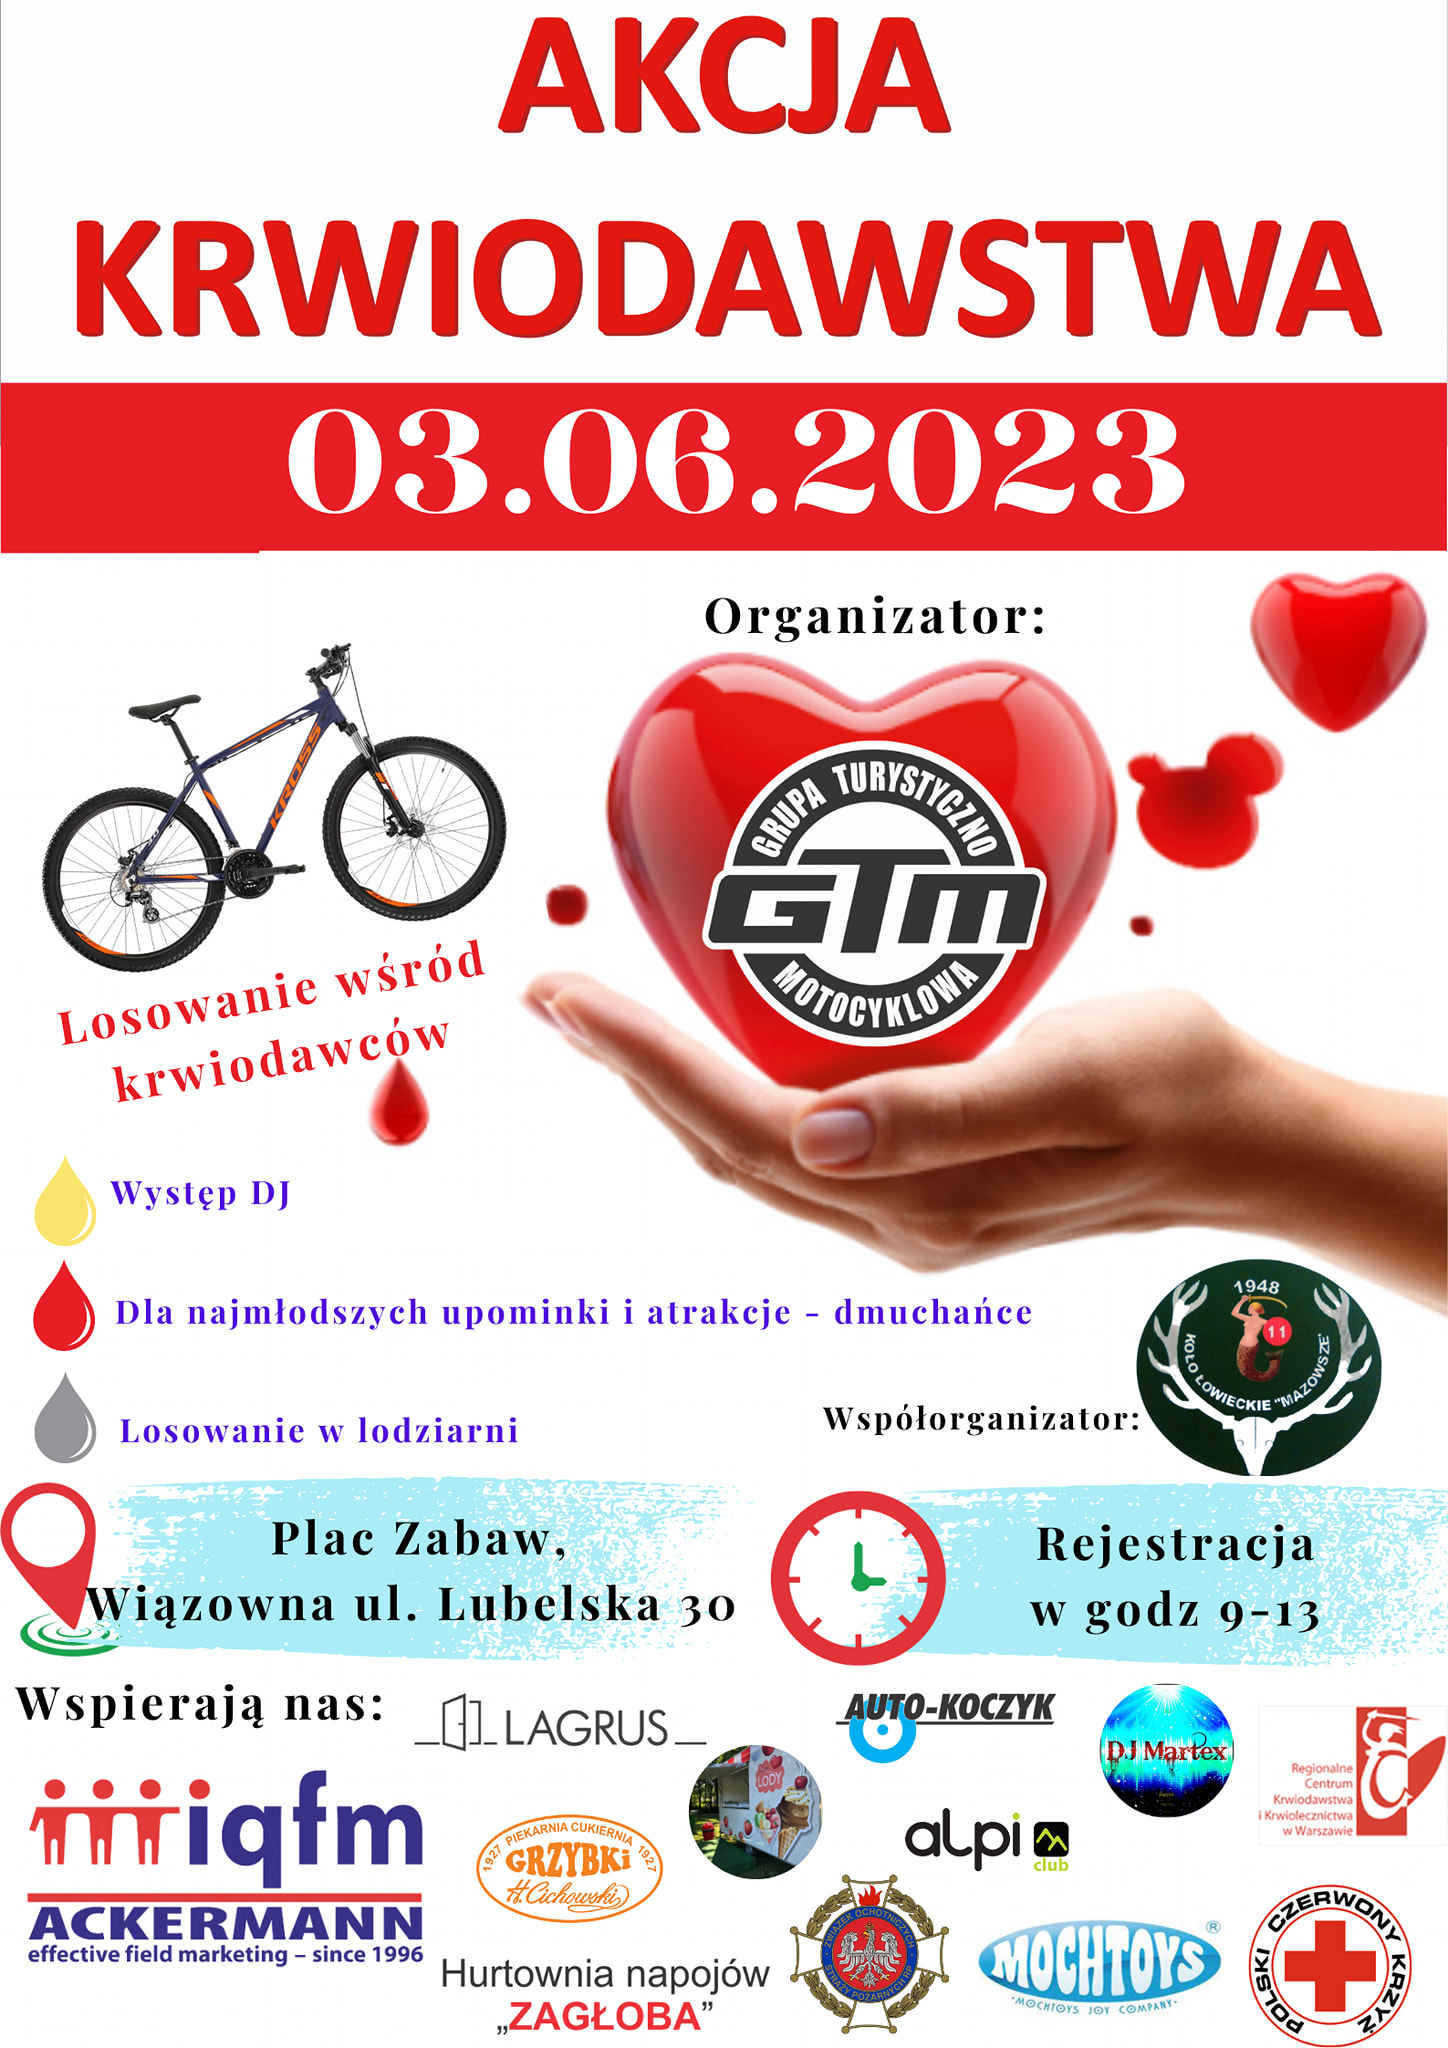 Akcja krwiodawstwa 3 czerwca w Gminnym Parku Centrum w Wiązownie w godz. 9.00 - 13.00